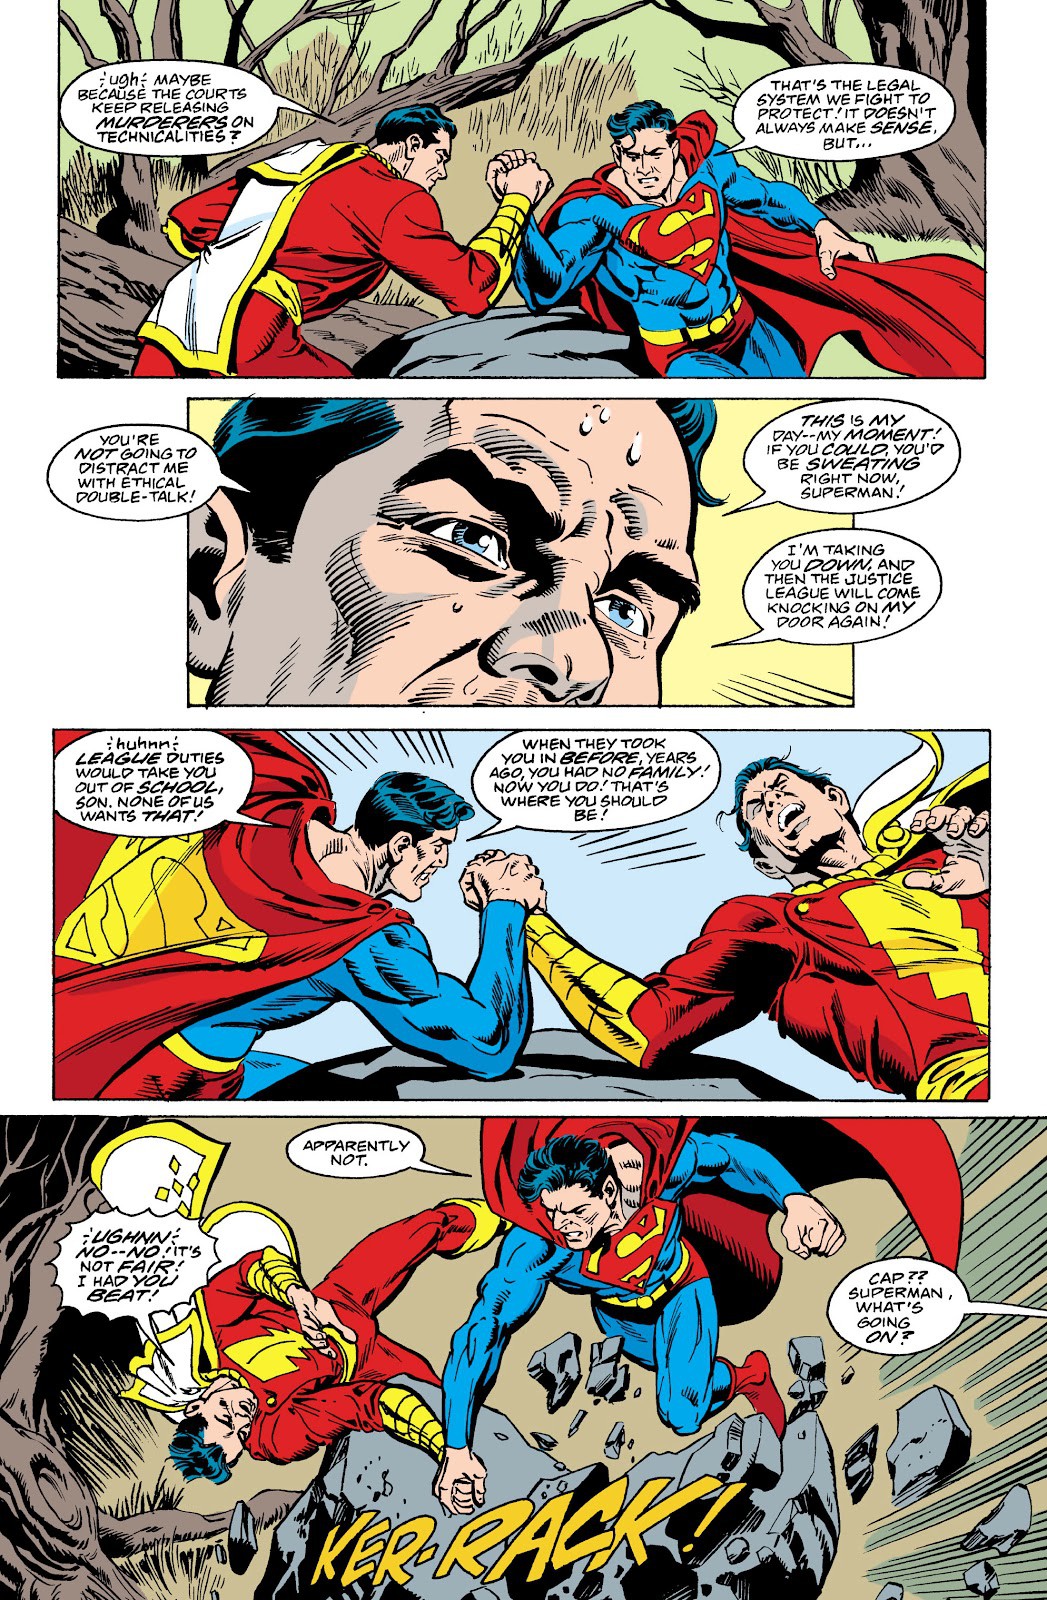 Shazam vs Superman: Ai là siêu anh hùng mạnh mẽ hơn? - Ảnh 4.